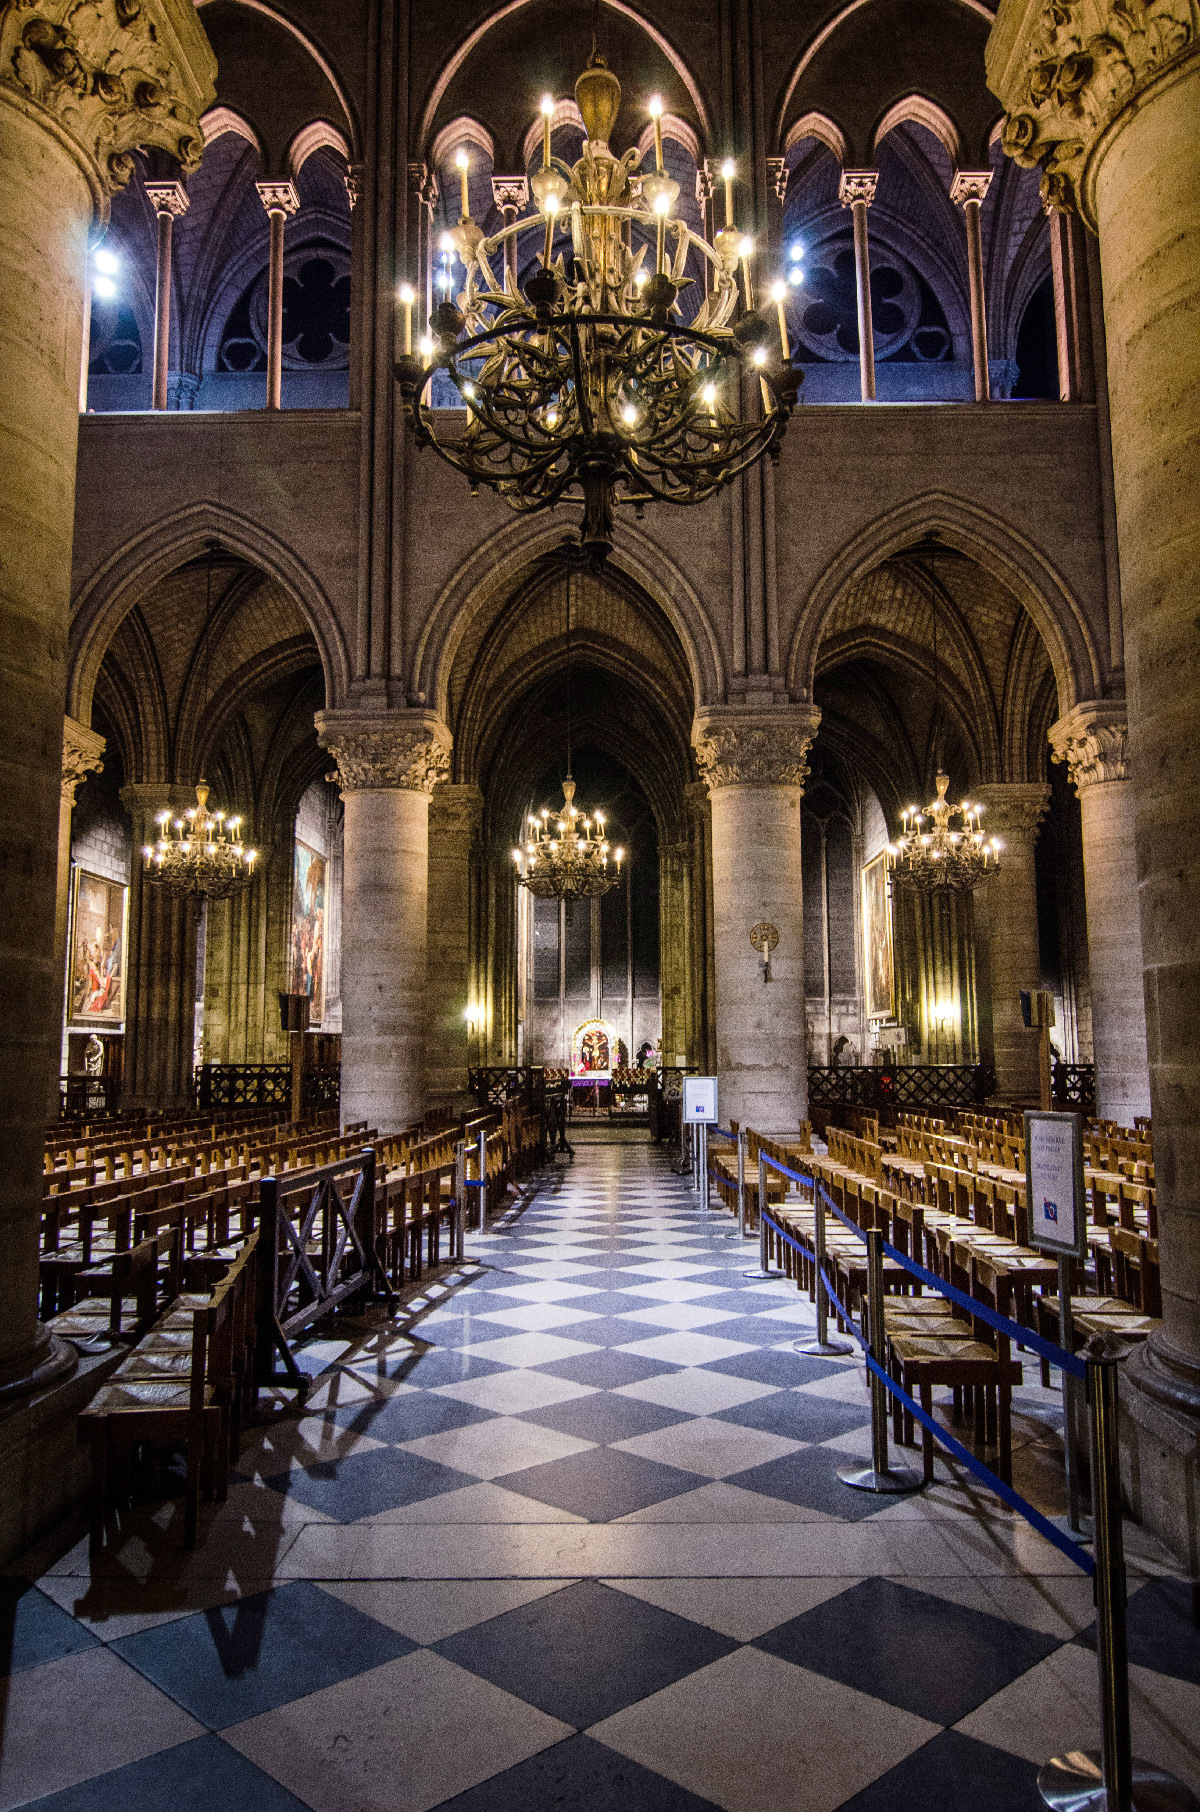 Cathédrale Notre-Dame de Paris, France - bas-cote, chapelles latérales et fenêtres des tribune